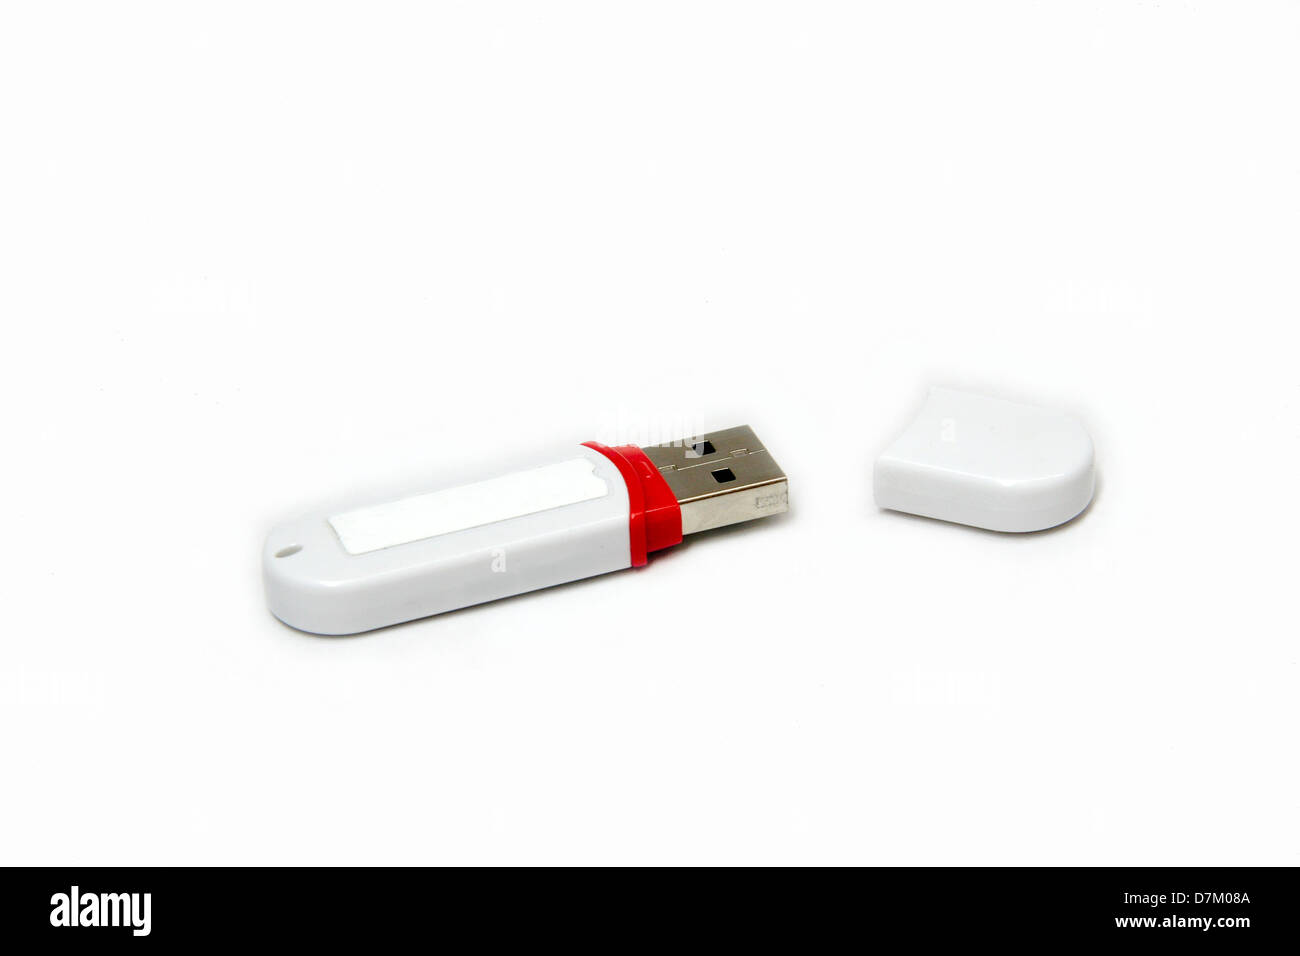 Weiß gefärbt USB-Stick mit offener Kappe, isoliert auf weißem Hintergrund  Stockfotografie - Alamy